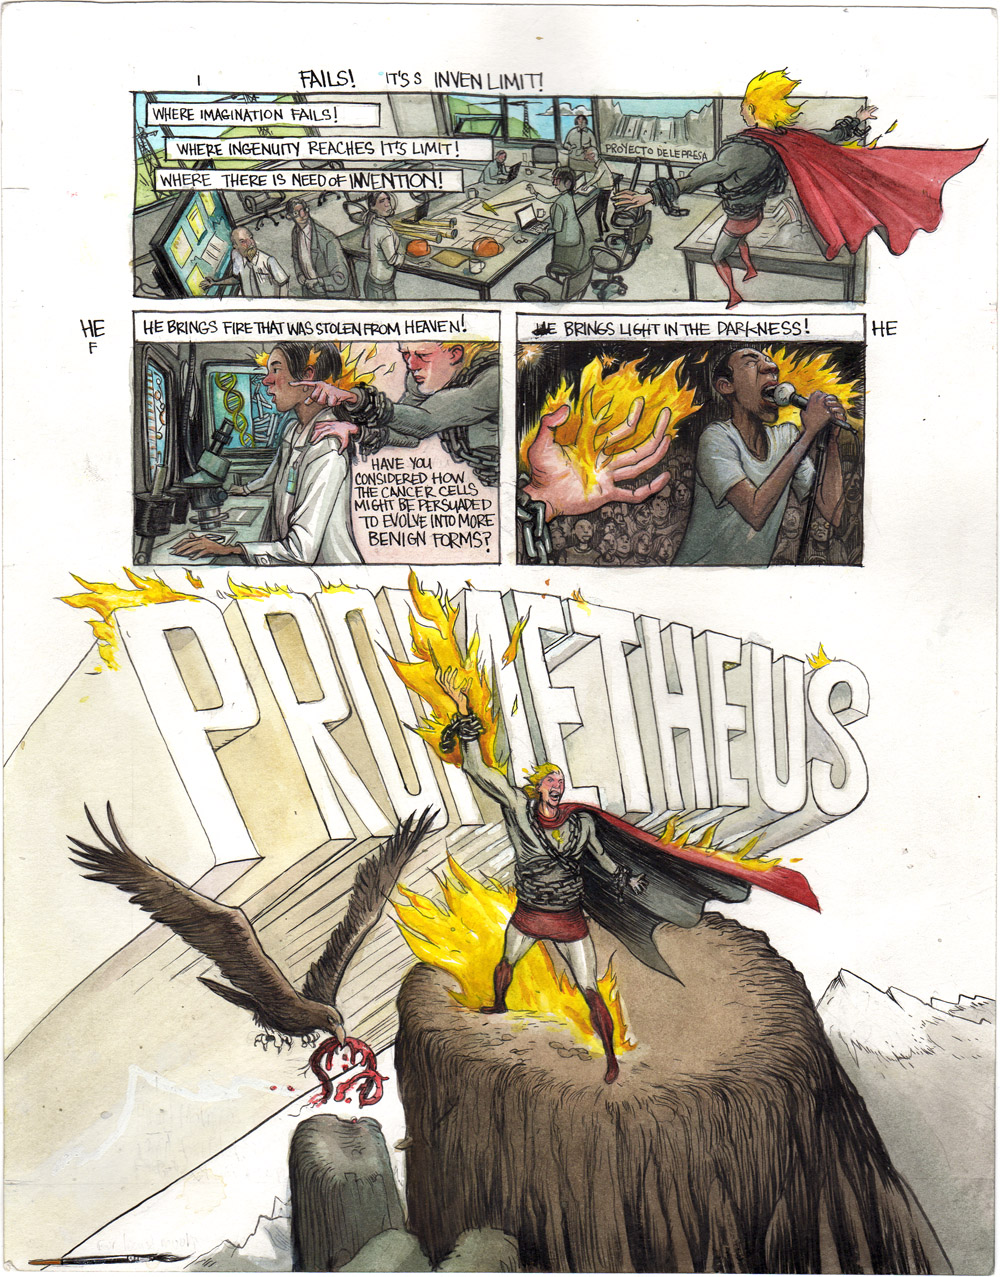 Prometheus - 3 Page Set - w Grant Morrison